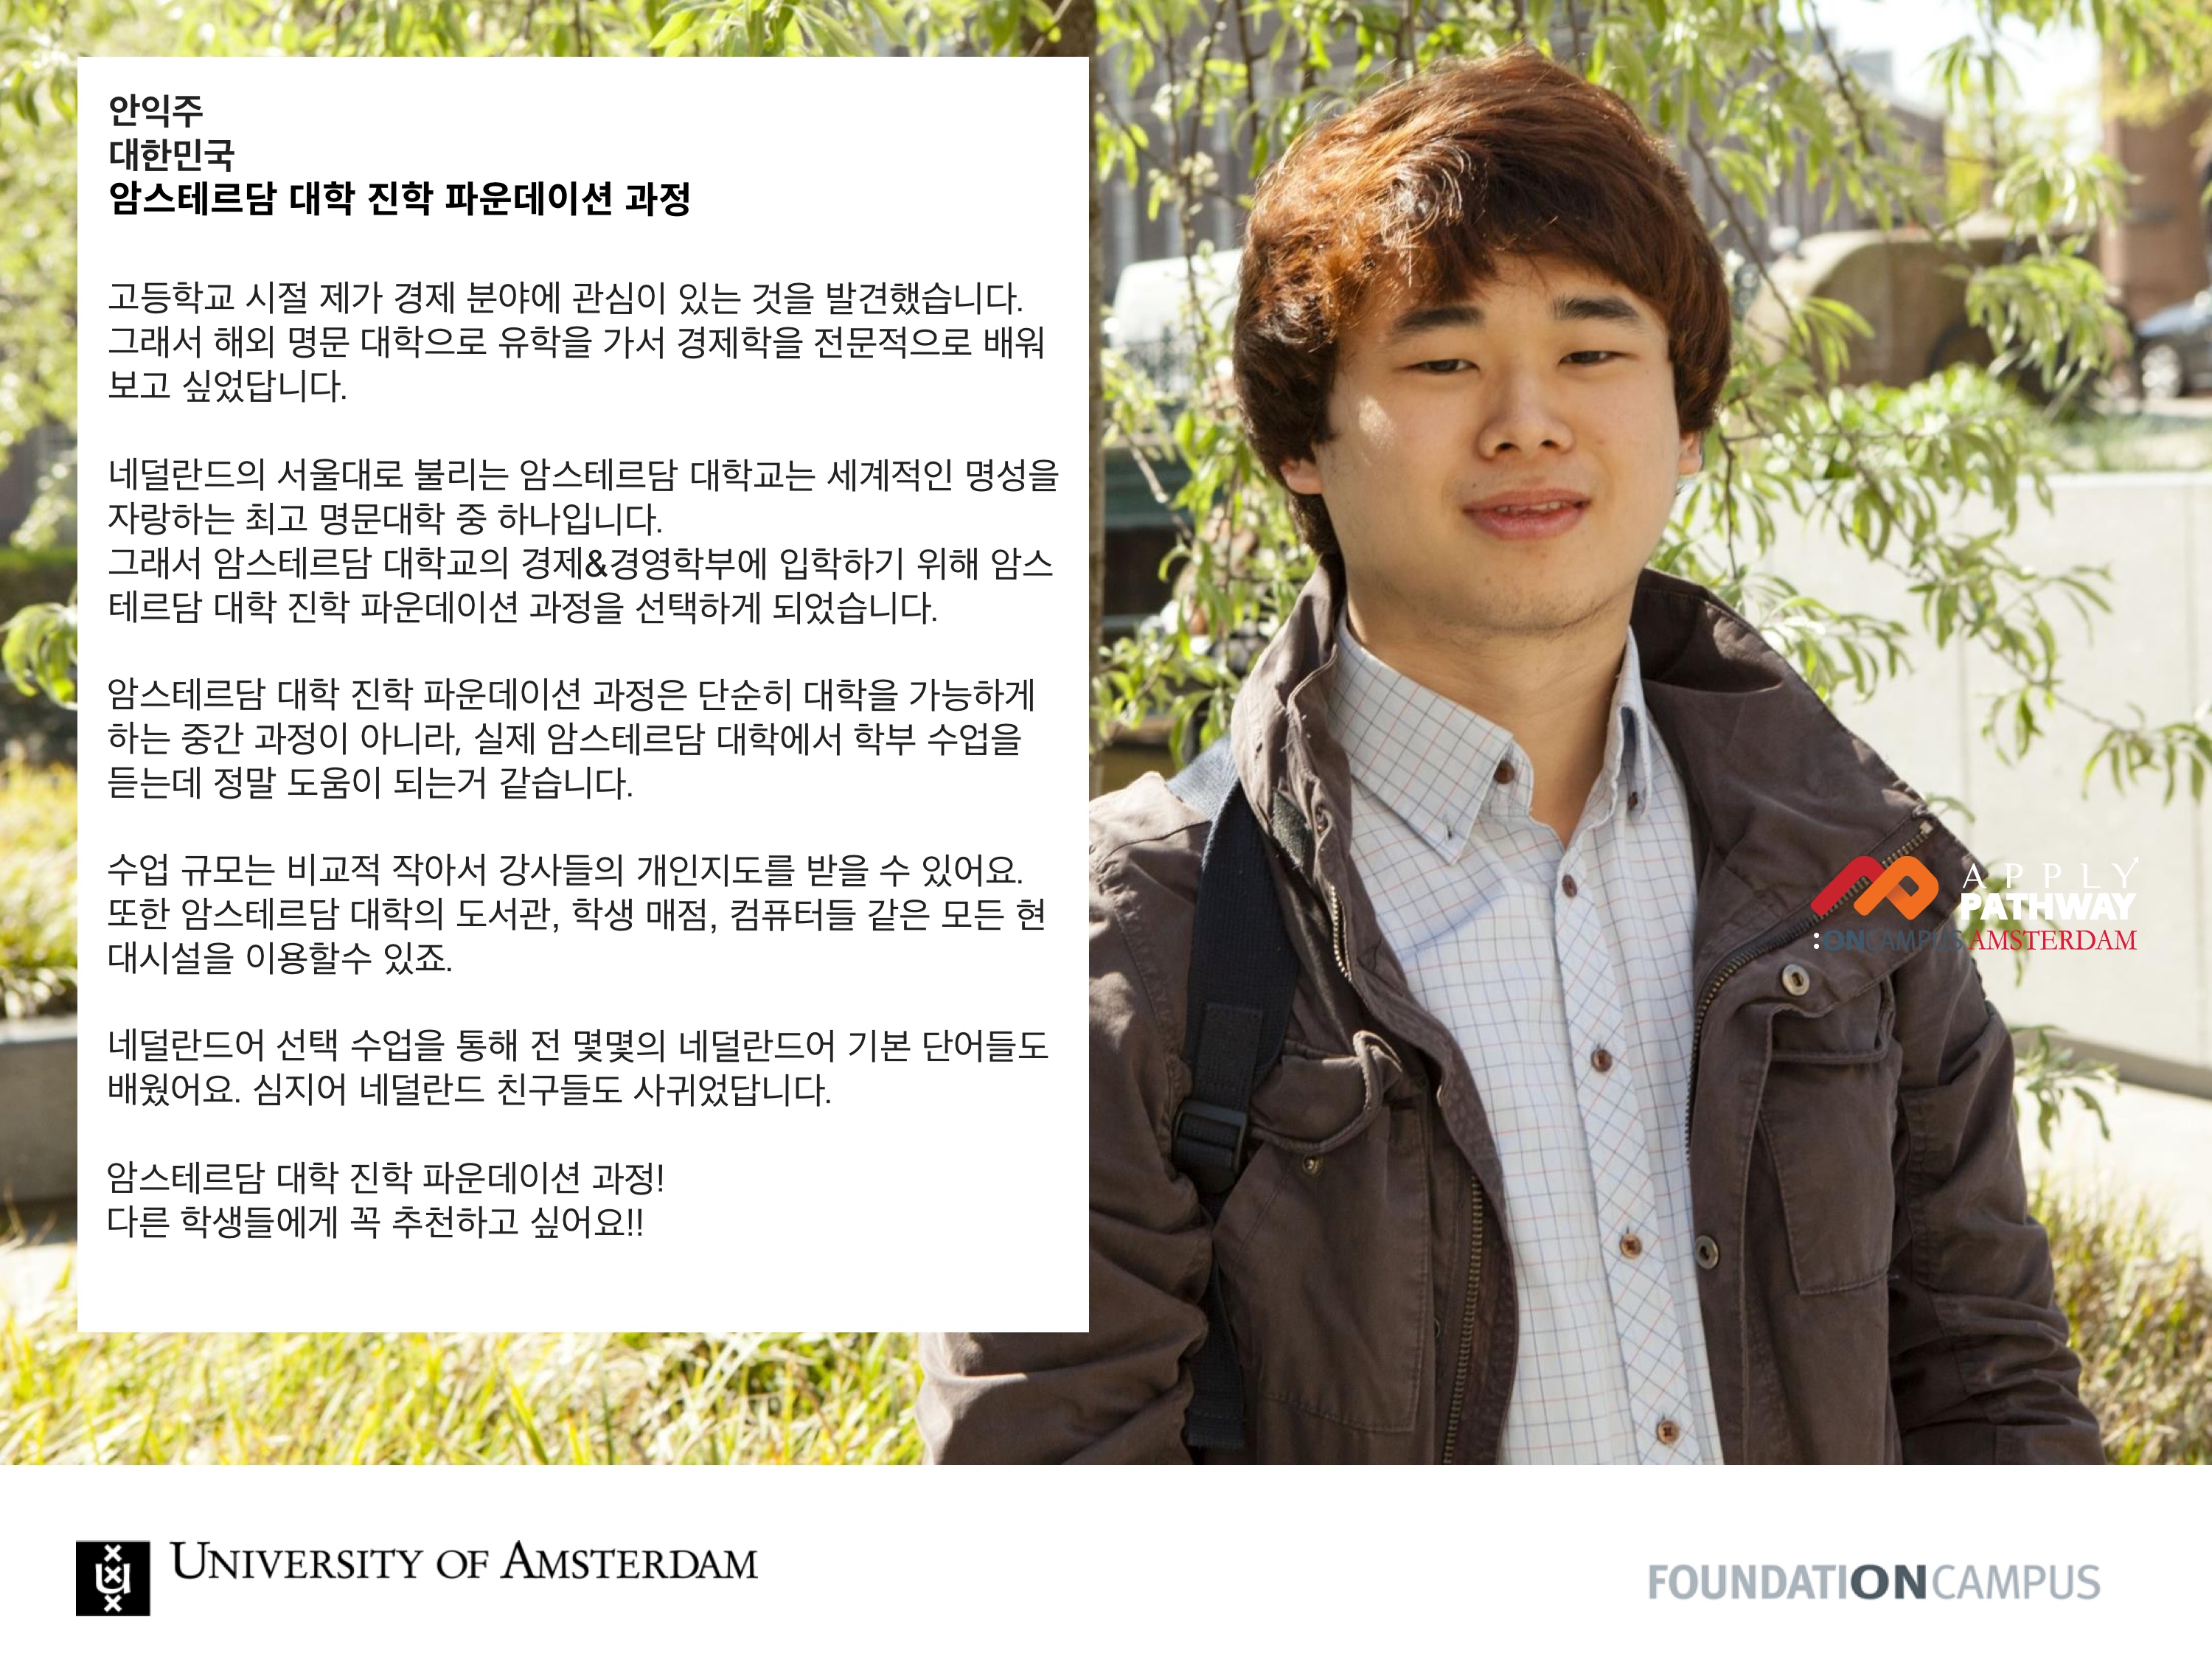 Ickju Ahn_South Korea_Amsterdam FoundationCampus